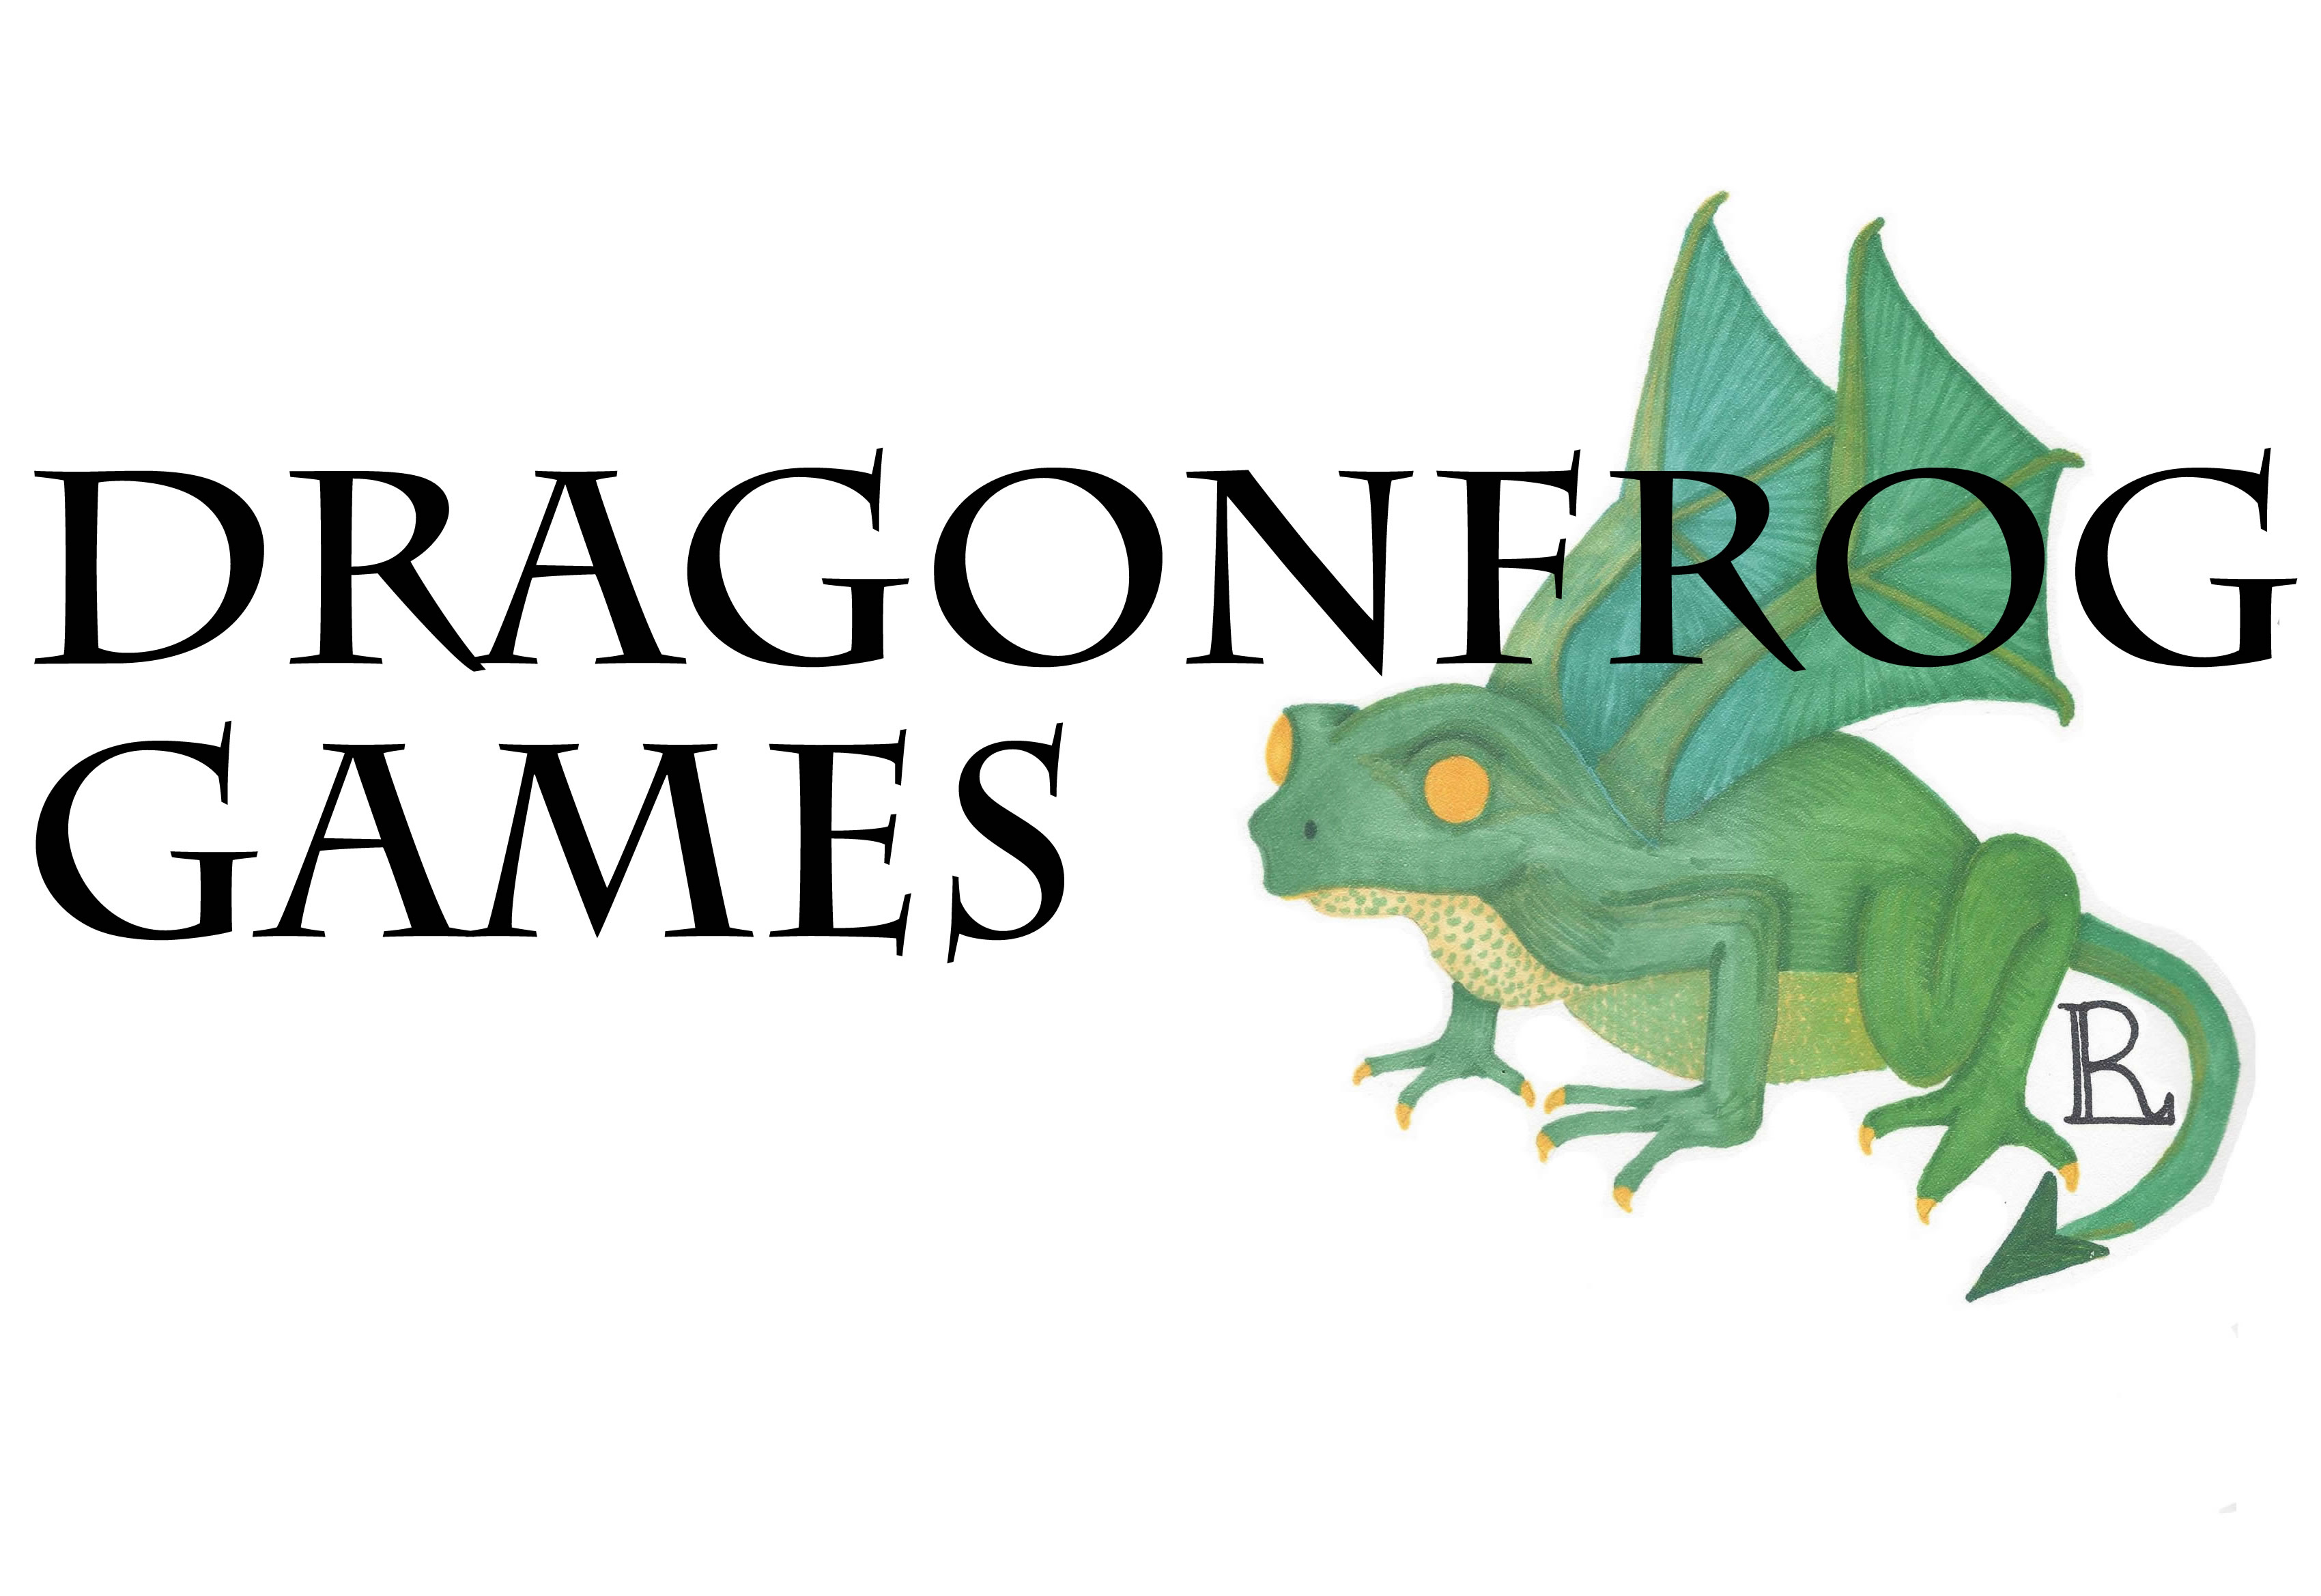 Dragonfrog Games